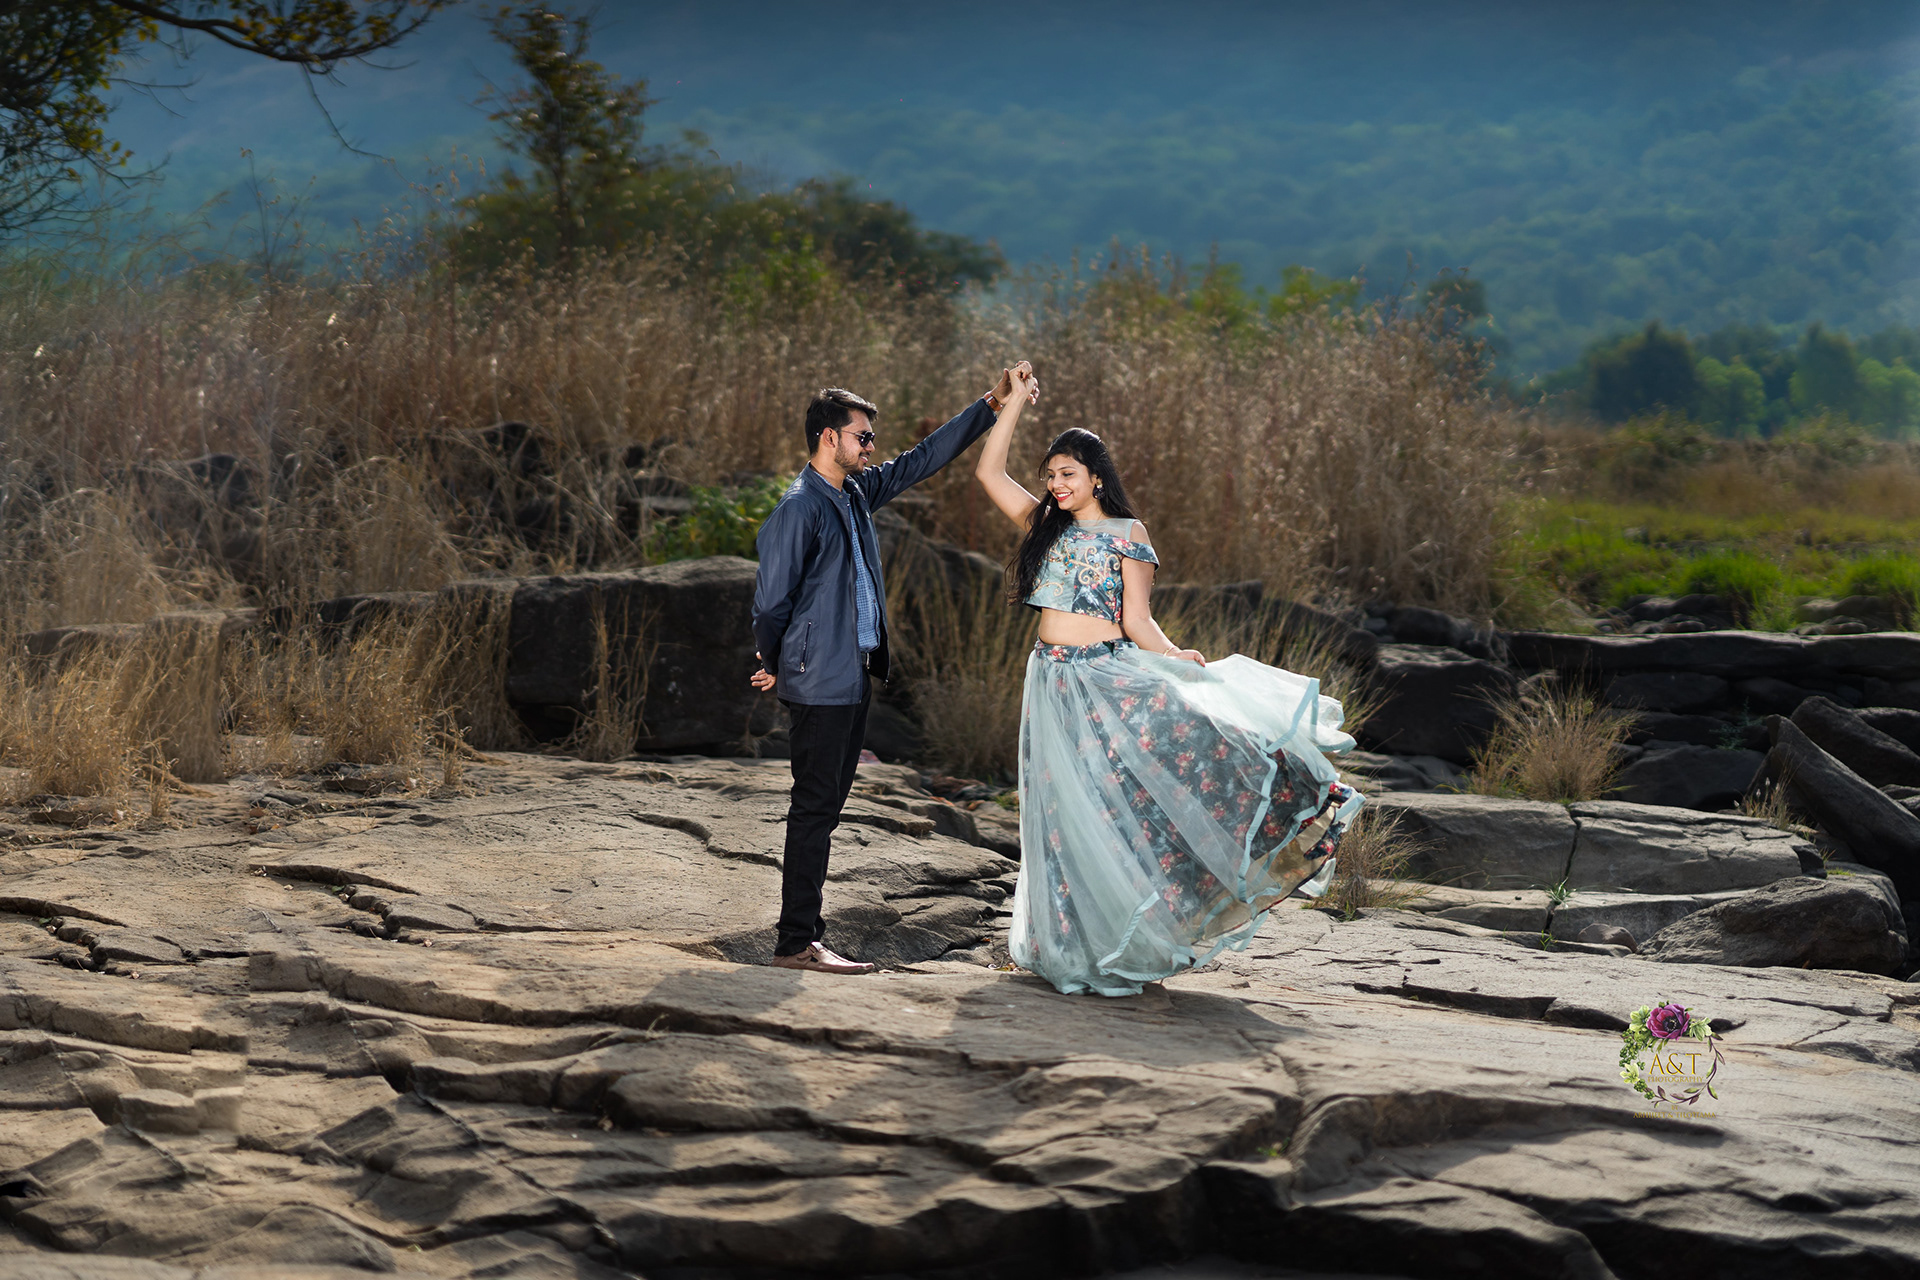 Aditya and Chandani having romantic pre-wedding poses at Tamini Ghat near Pune